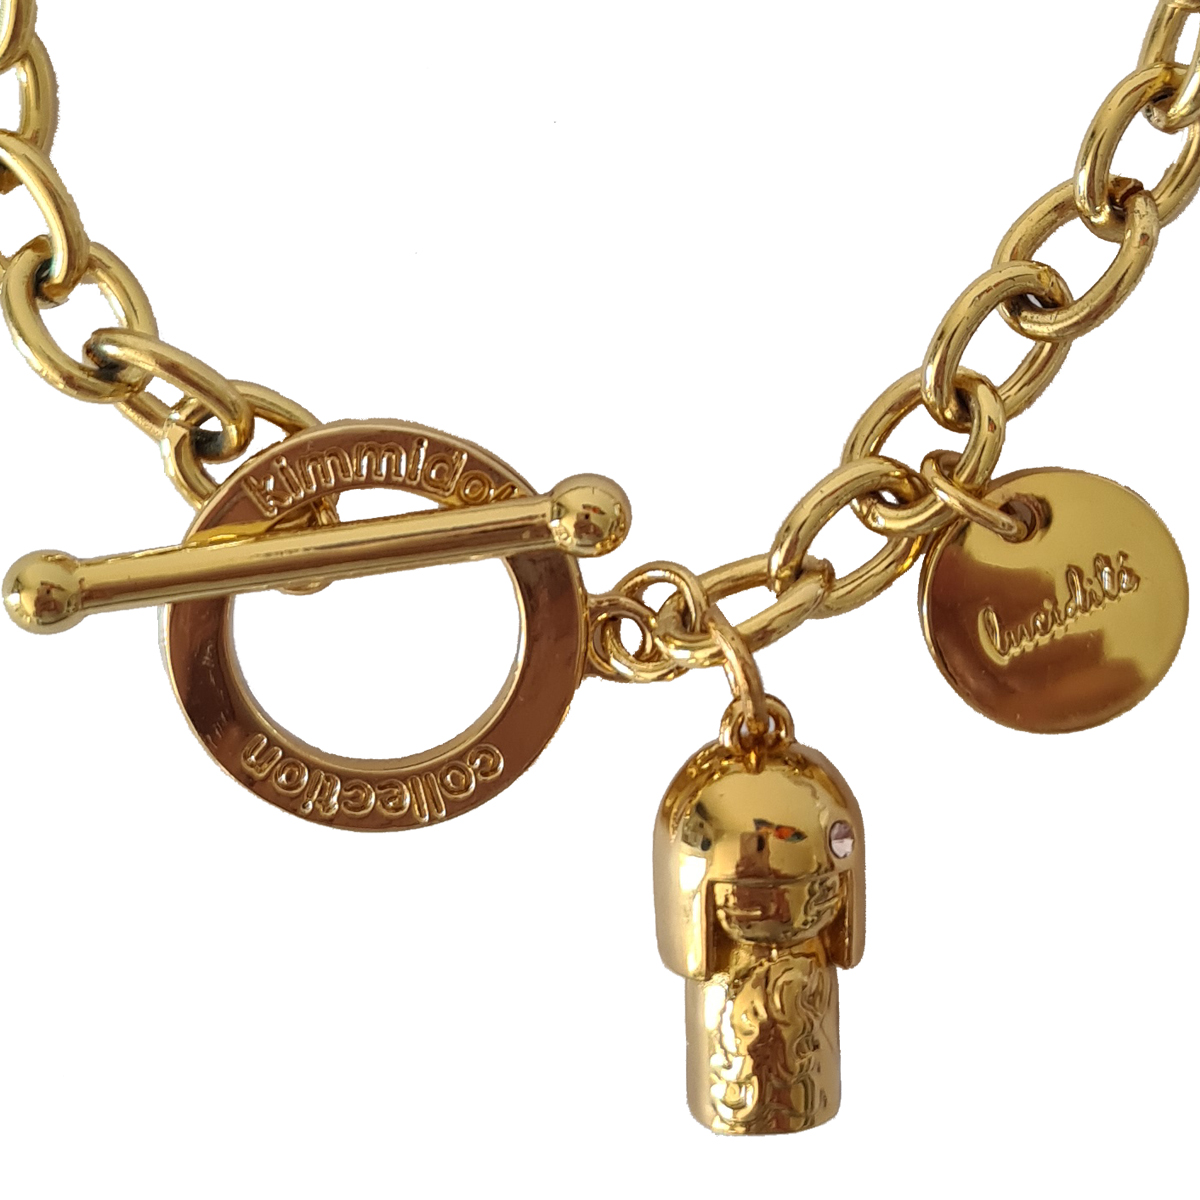 Chikako Kimmidoll Swarovski Chain Bracelet with Charm